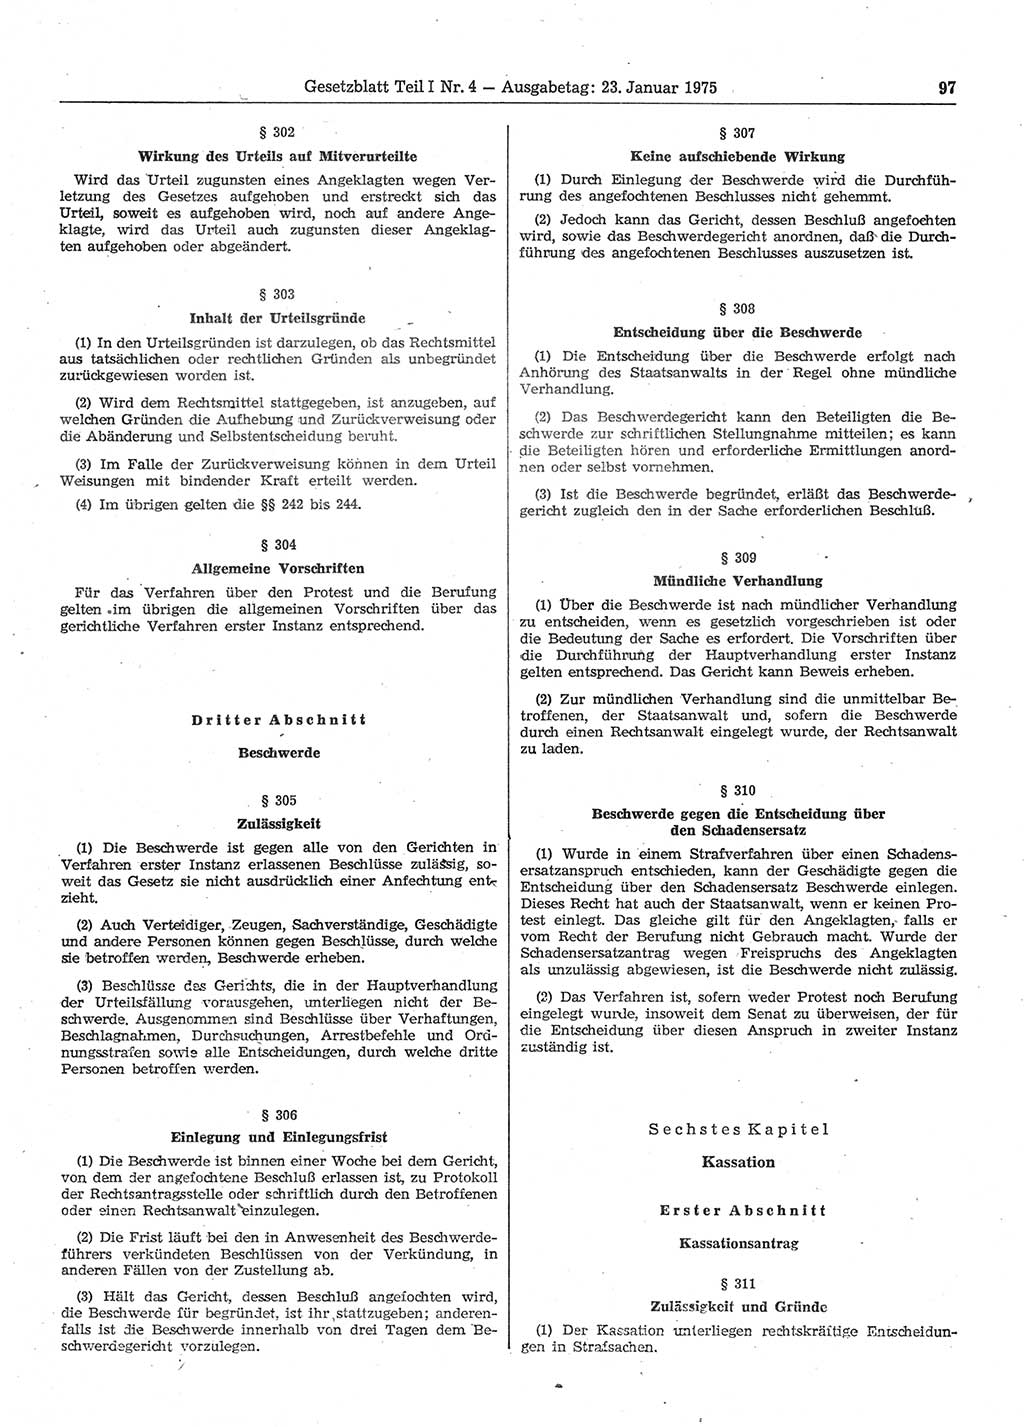 Gesetzblatt (GBl.) der Deutschen Demokratischen Republik (DDR) Teil Ⅰ 1975, Seite 97 (GBl. DDR Ⅰ 1975, S. 97)